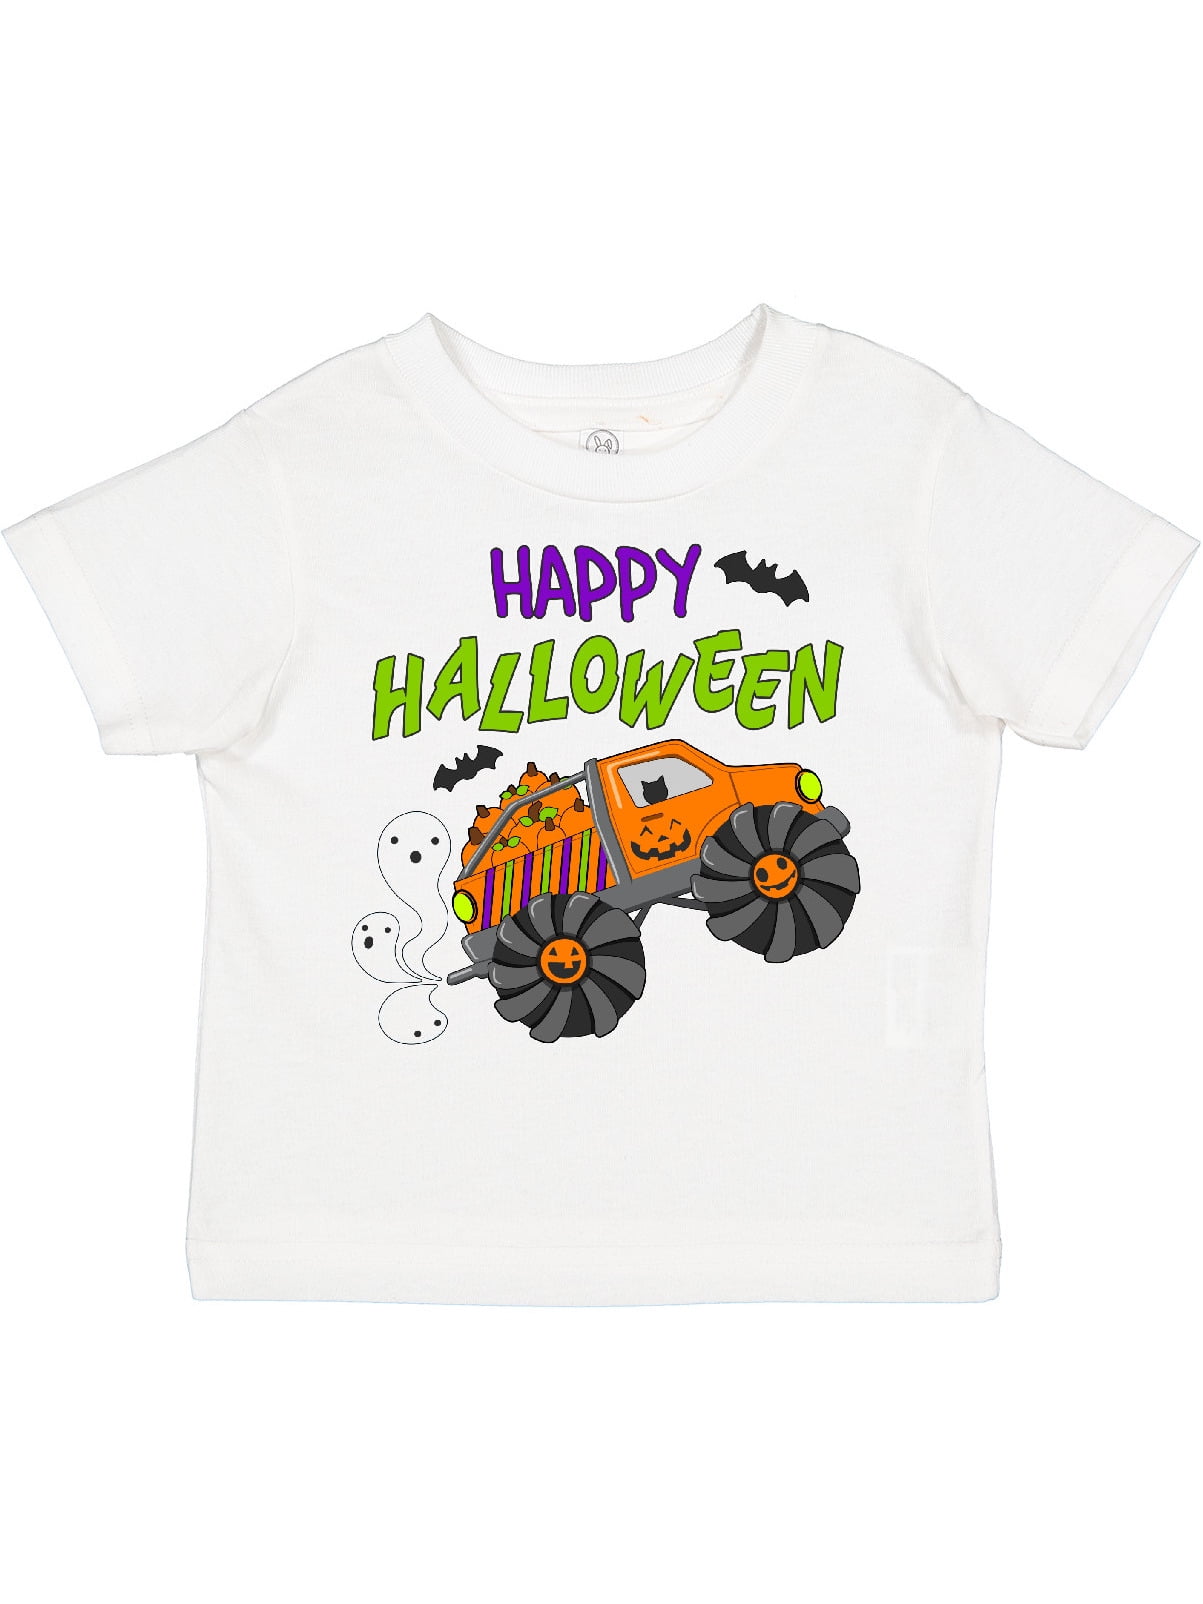 Halloween Toddler Boys T-Shirts Bat Pumpkin Ghosts New 